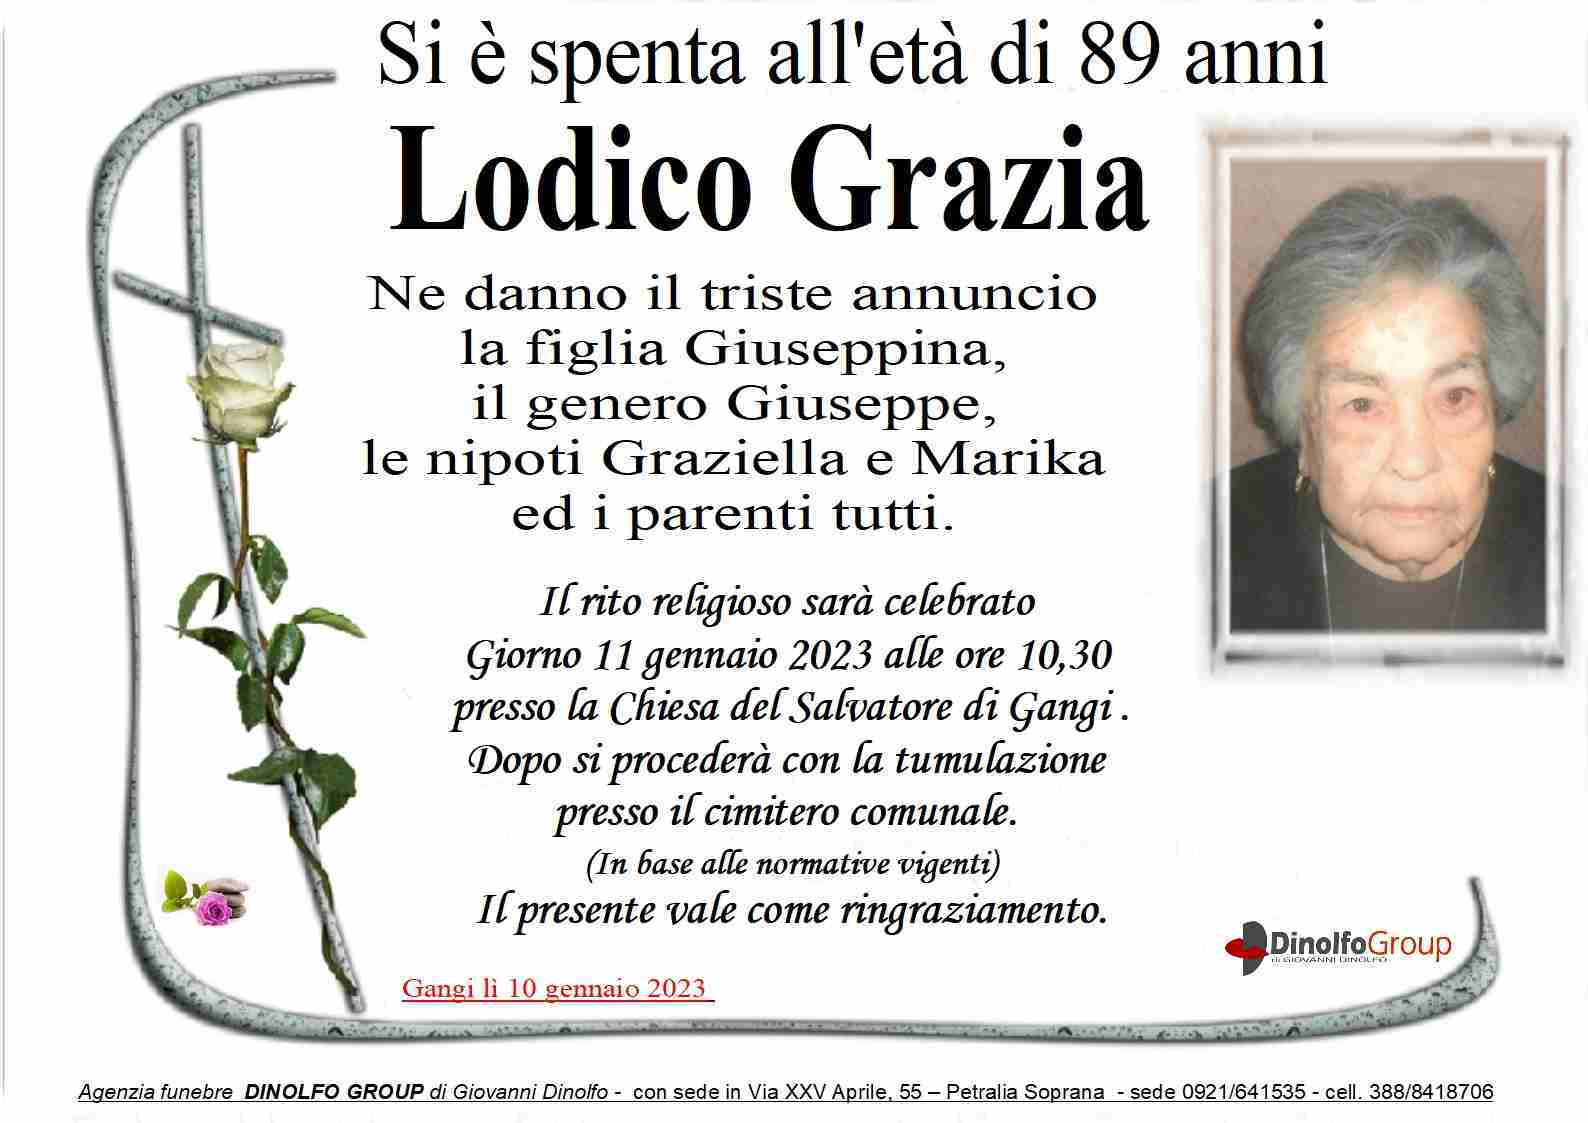 Grazia Lodico